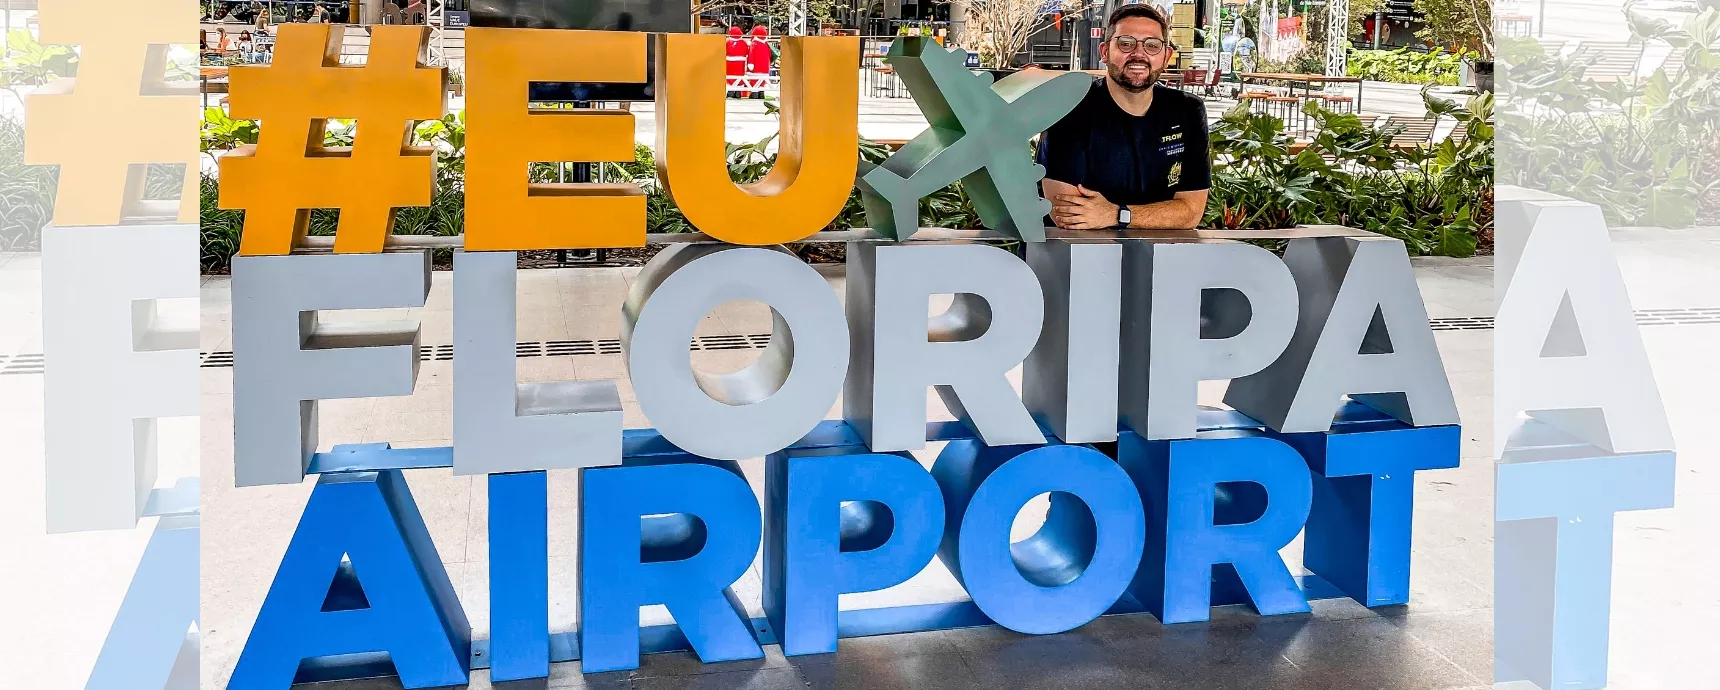 Der internationale Flughafen Florianópolis veranstaltet mit Airport Talk eine Sondertour zur Jubiläumsfeier